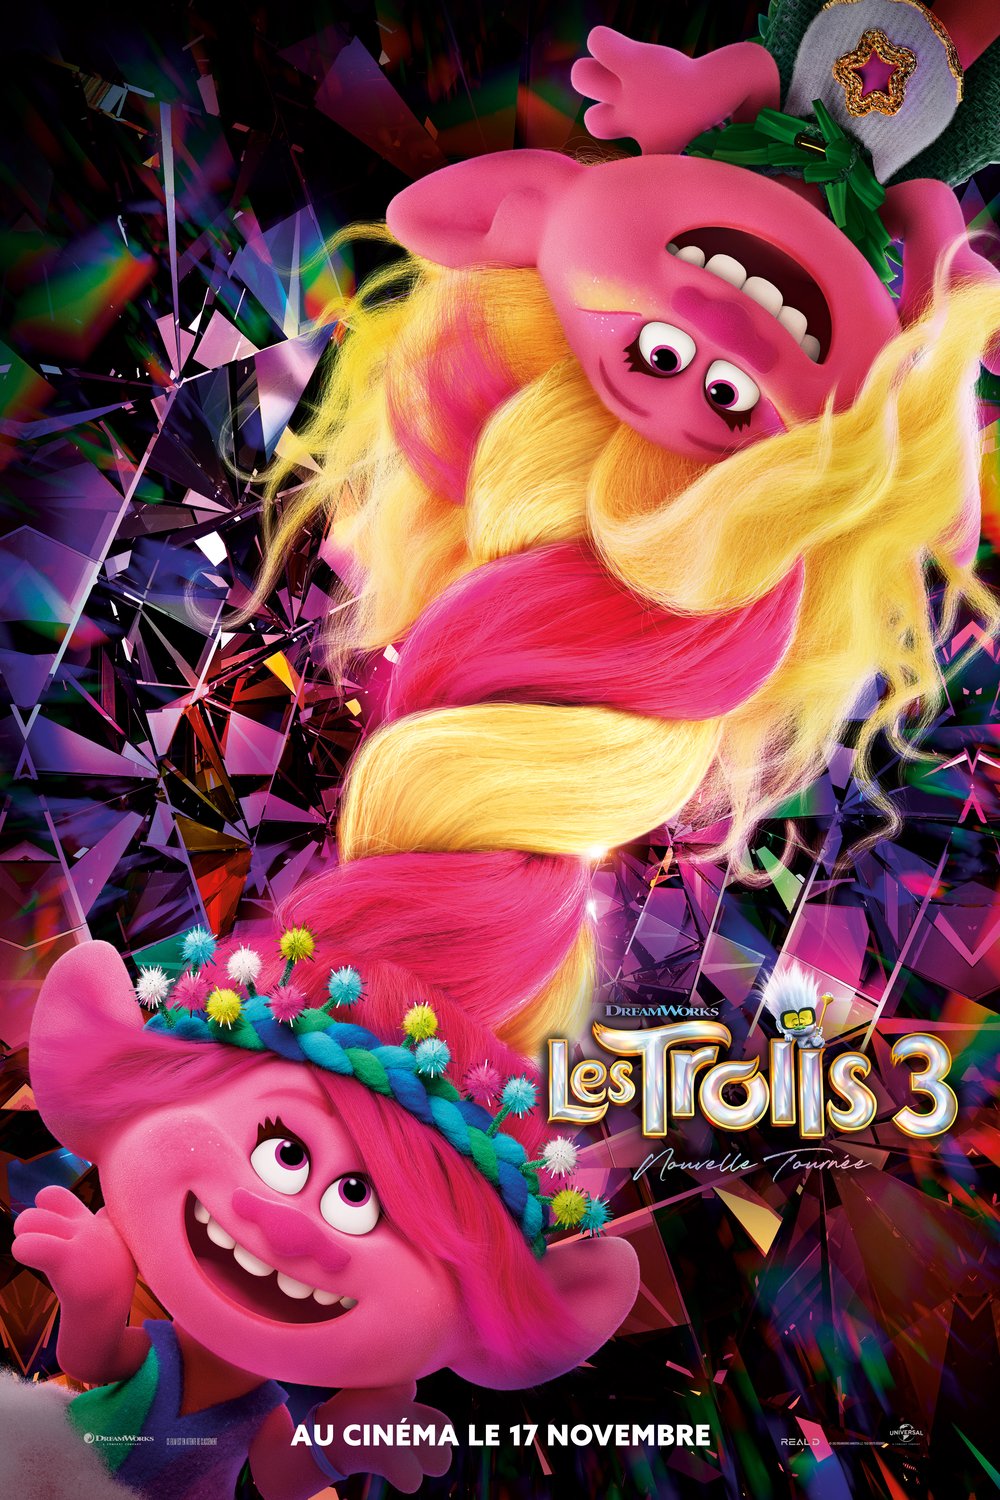 L'affiche du film Les Trolls 3: Nouvelle tournée